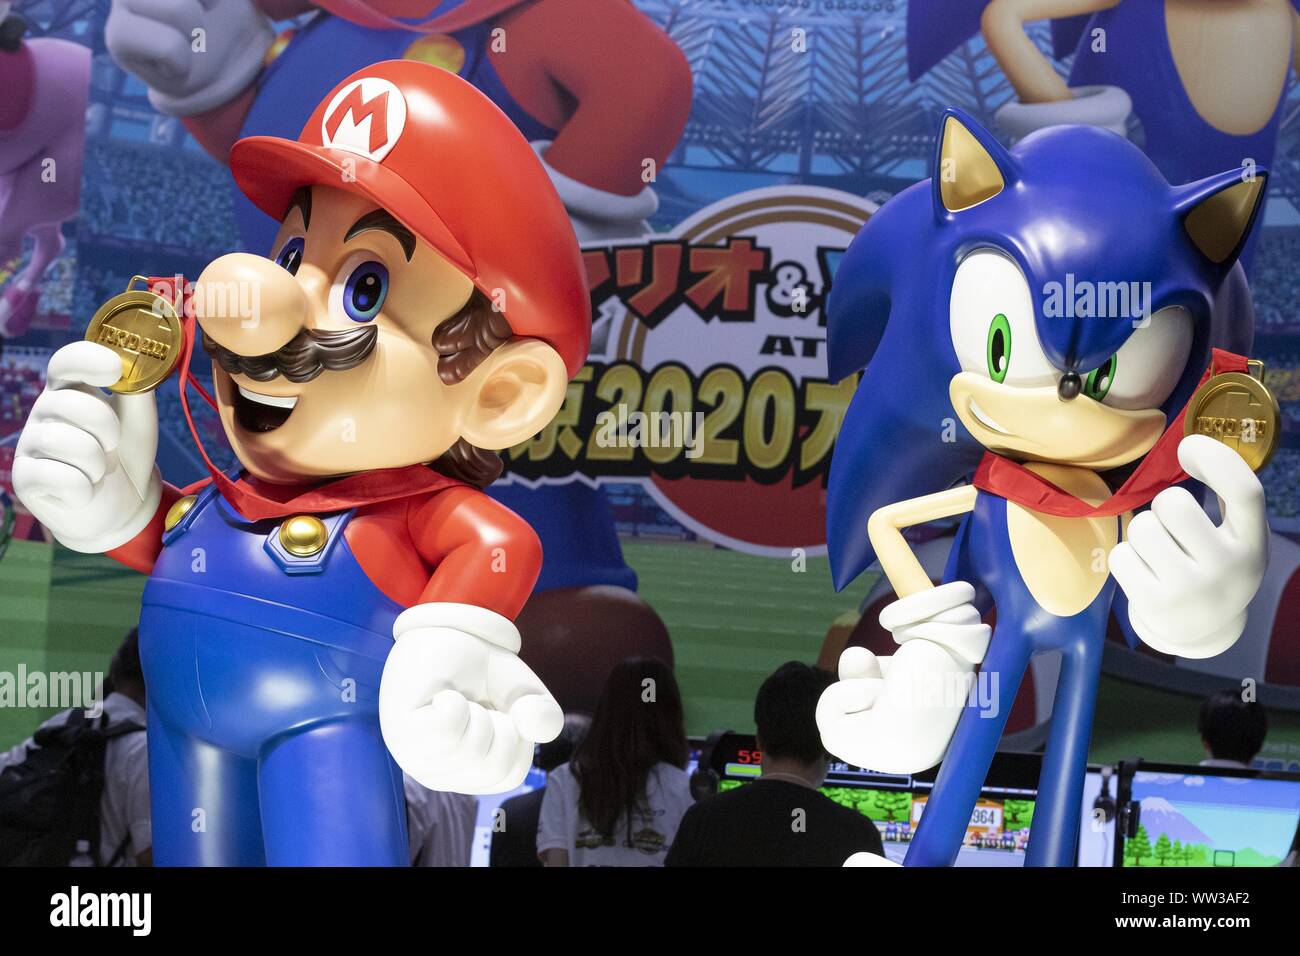 Chiba, Japón. 12 Sep, 2019. Estatuas de Super Mario y Sonic the Hedgehog  promover el videojuego oficial de los Juegos Olímpicos de Tokio 2020 en  exhibición en el Tokyo Game Show (TGS)